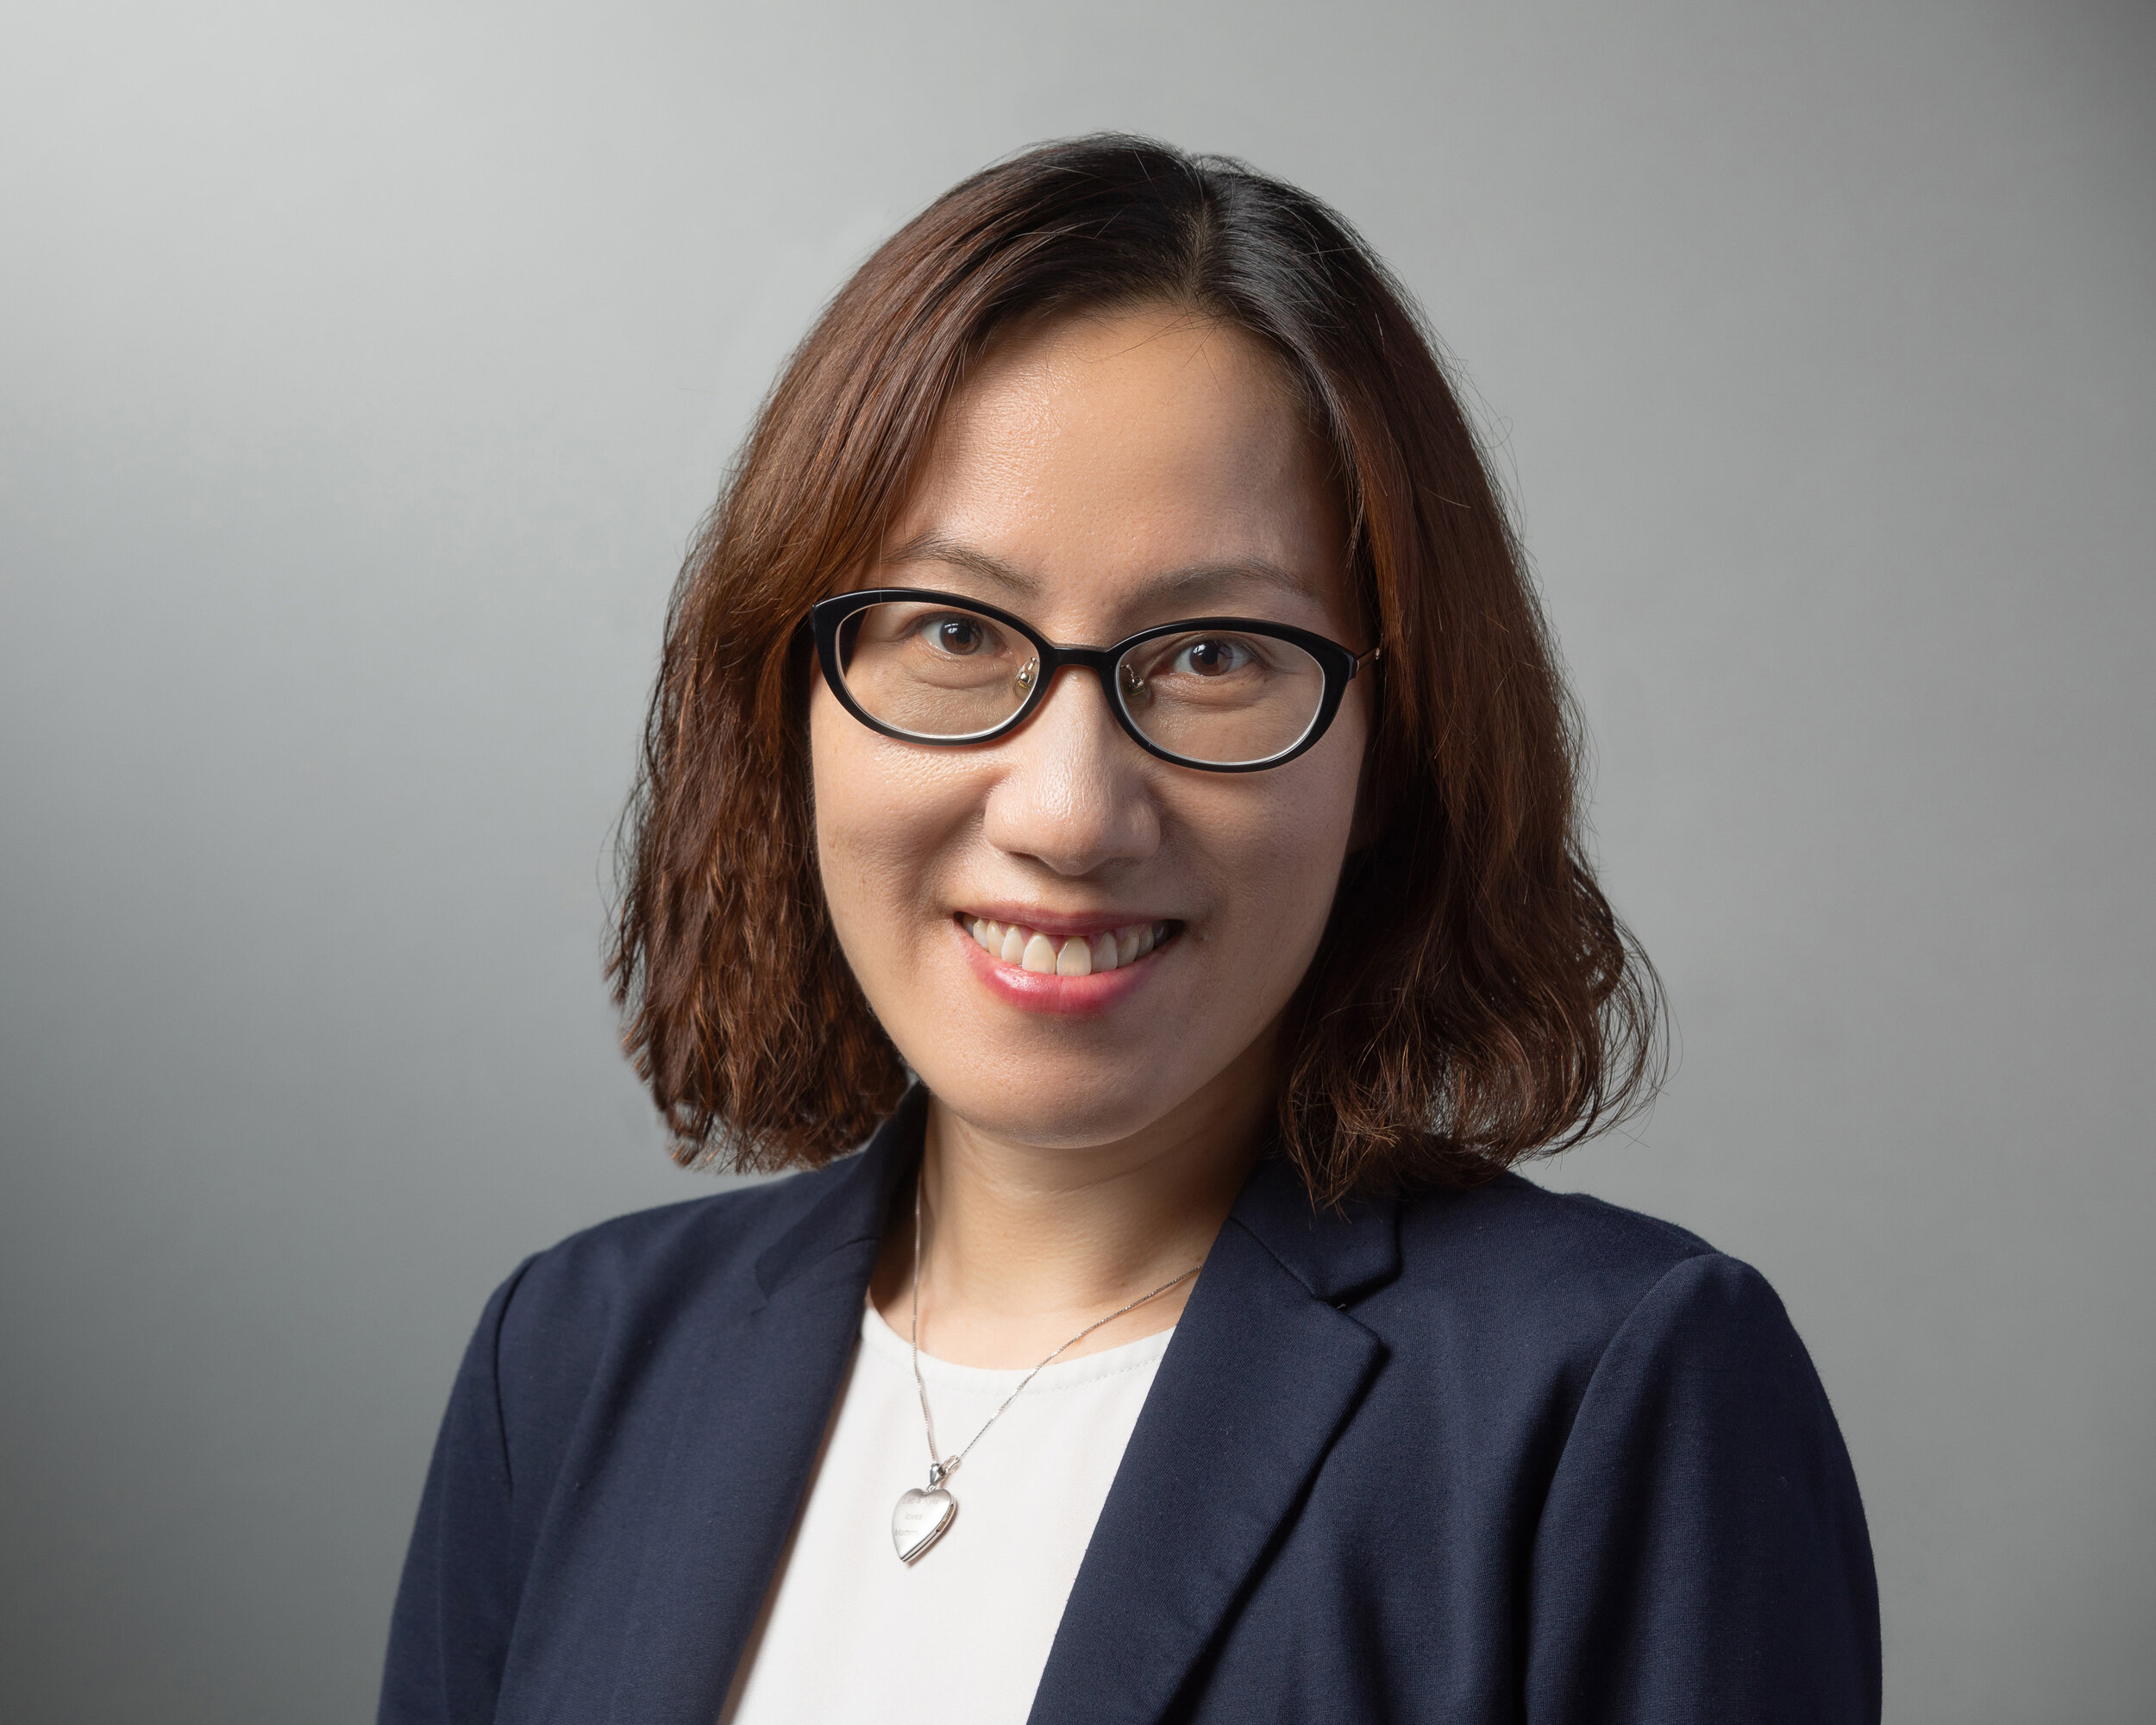 Dr. Eunice Yuen